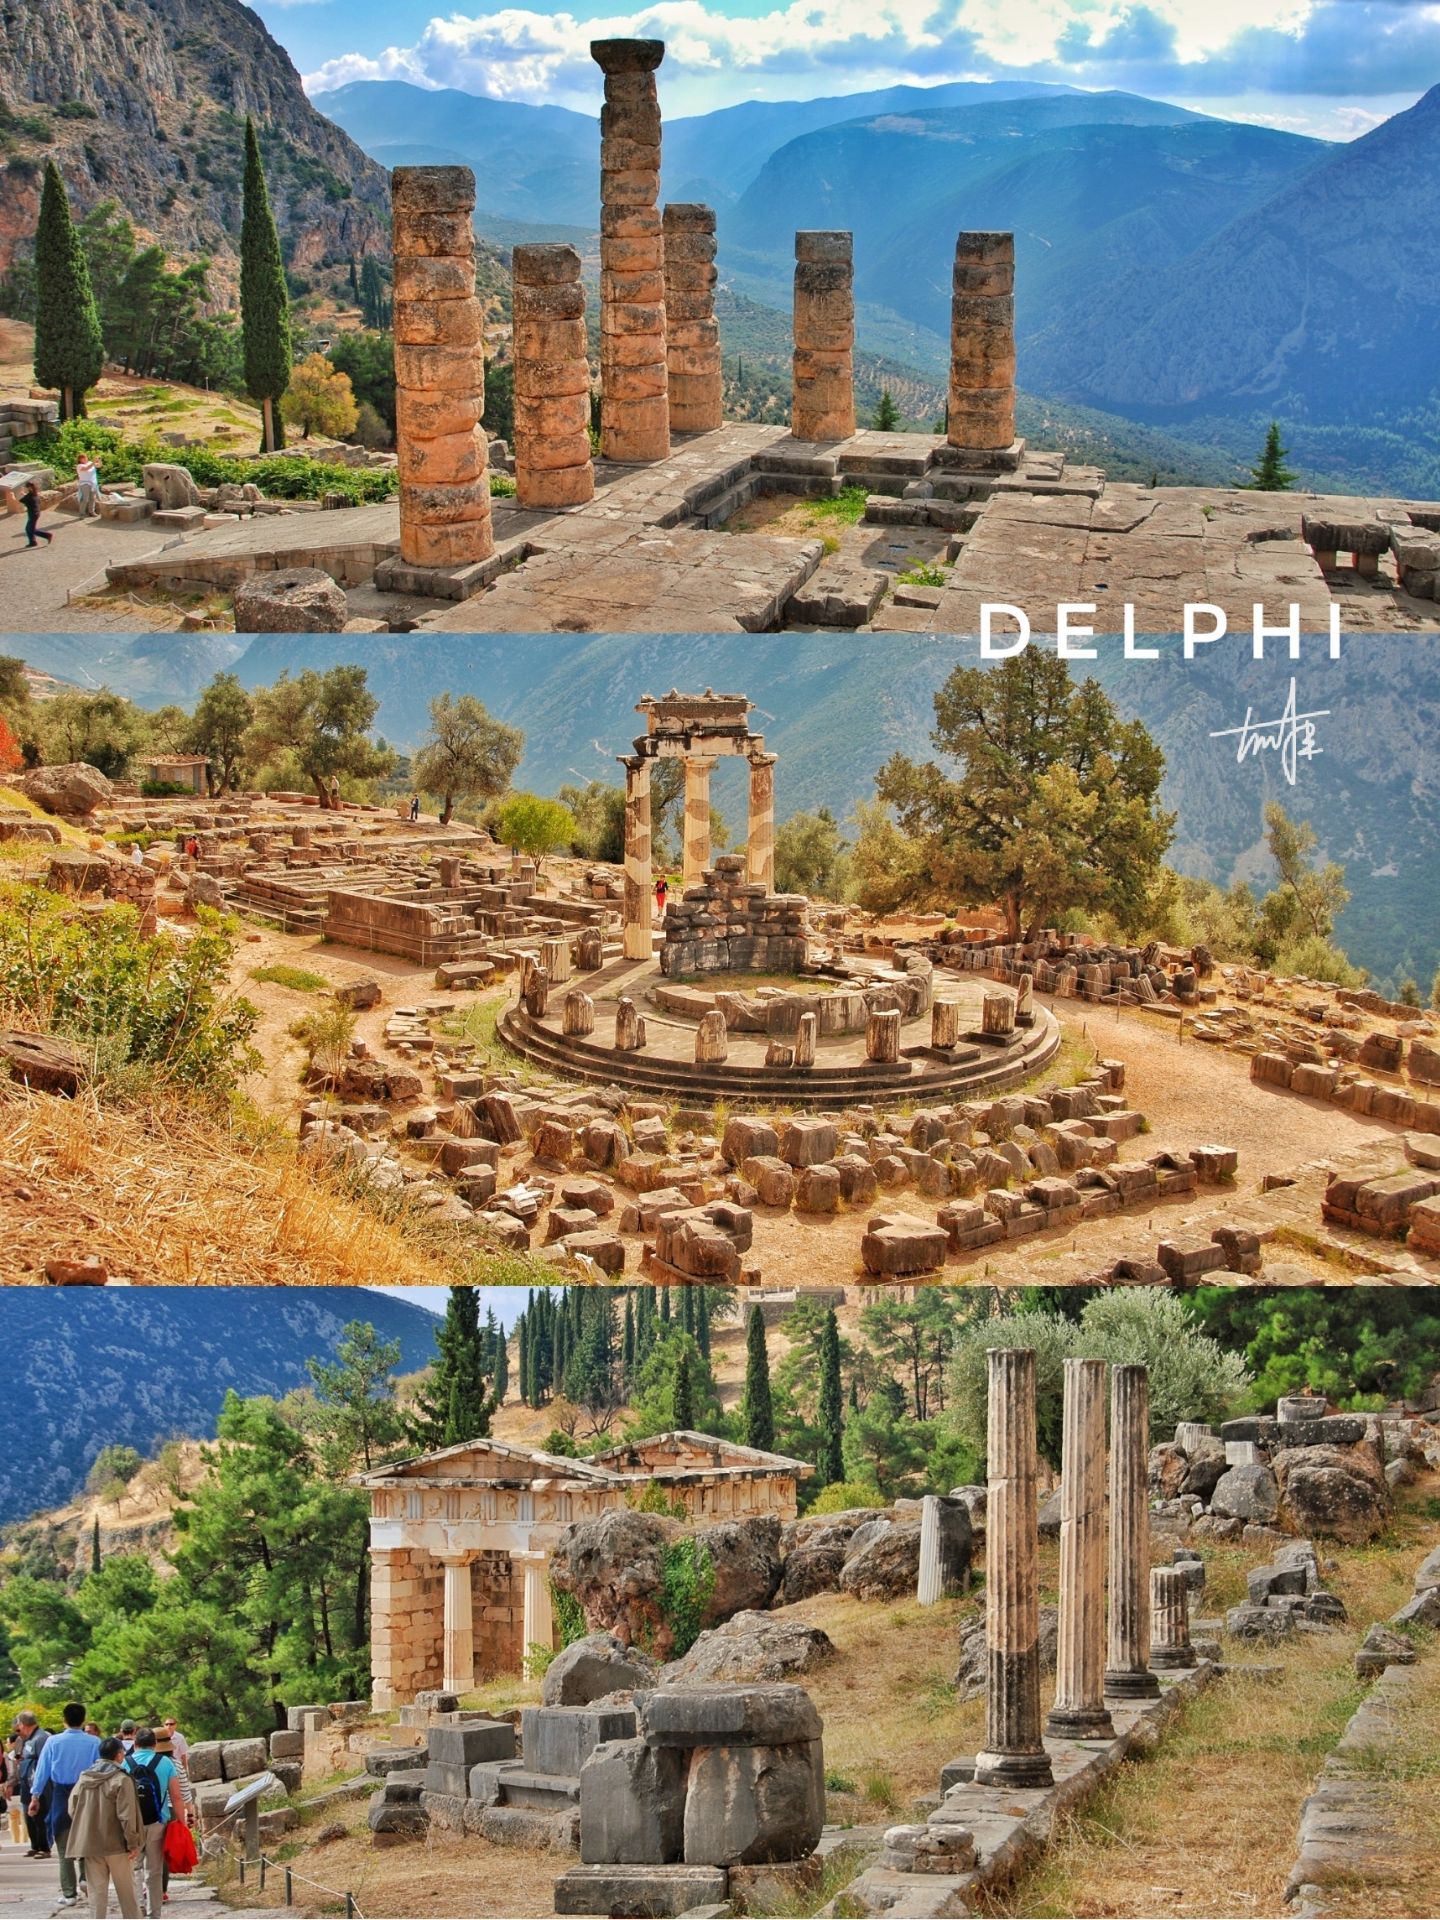 德尔菲遗址位于希腊中南部小镇德尔菲（Delphi），是希腊最重要的考古遗址之一，是希腊十八个联合国教